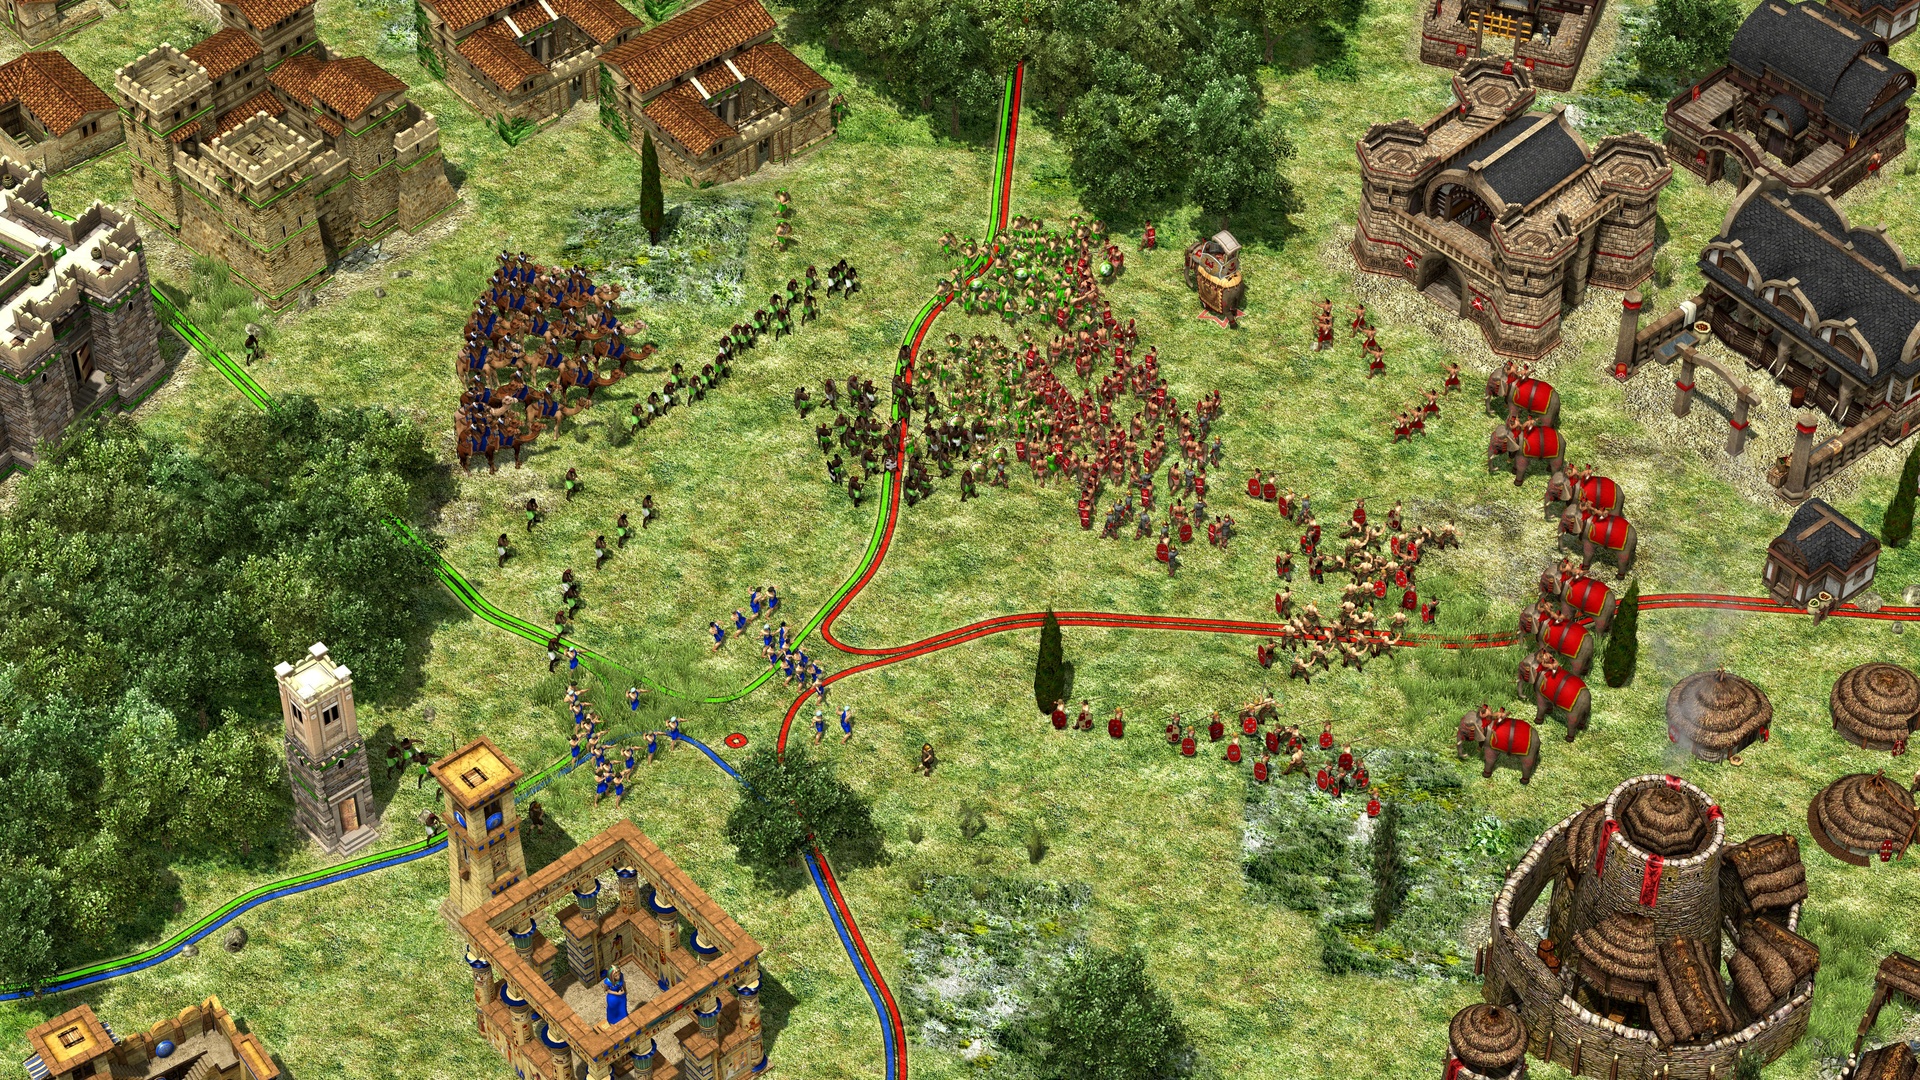 Bleu indique le joueur, vert les alliés et rouge les opposants